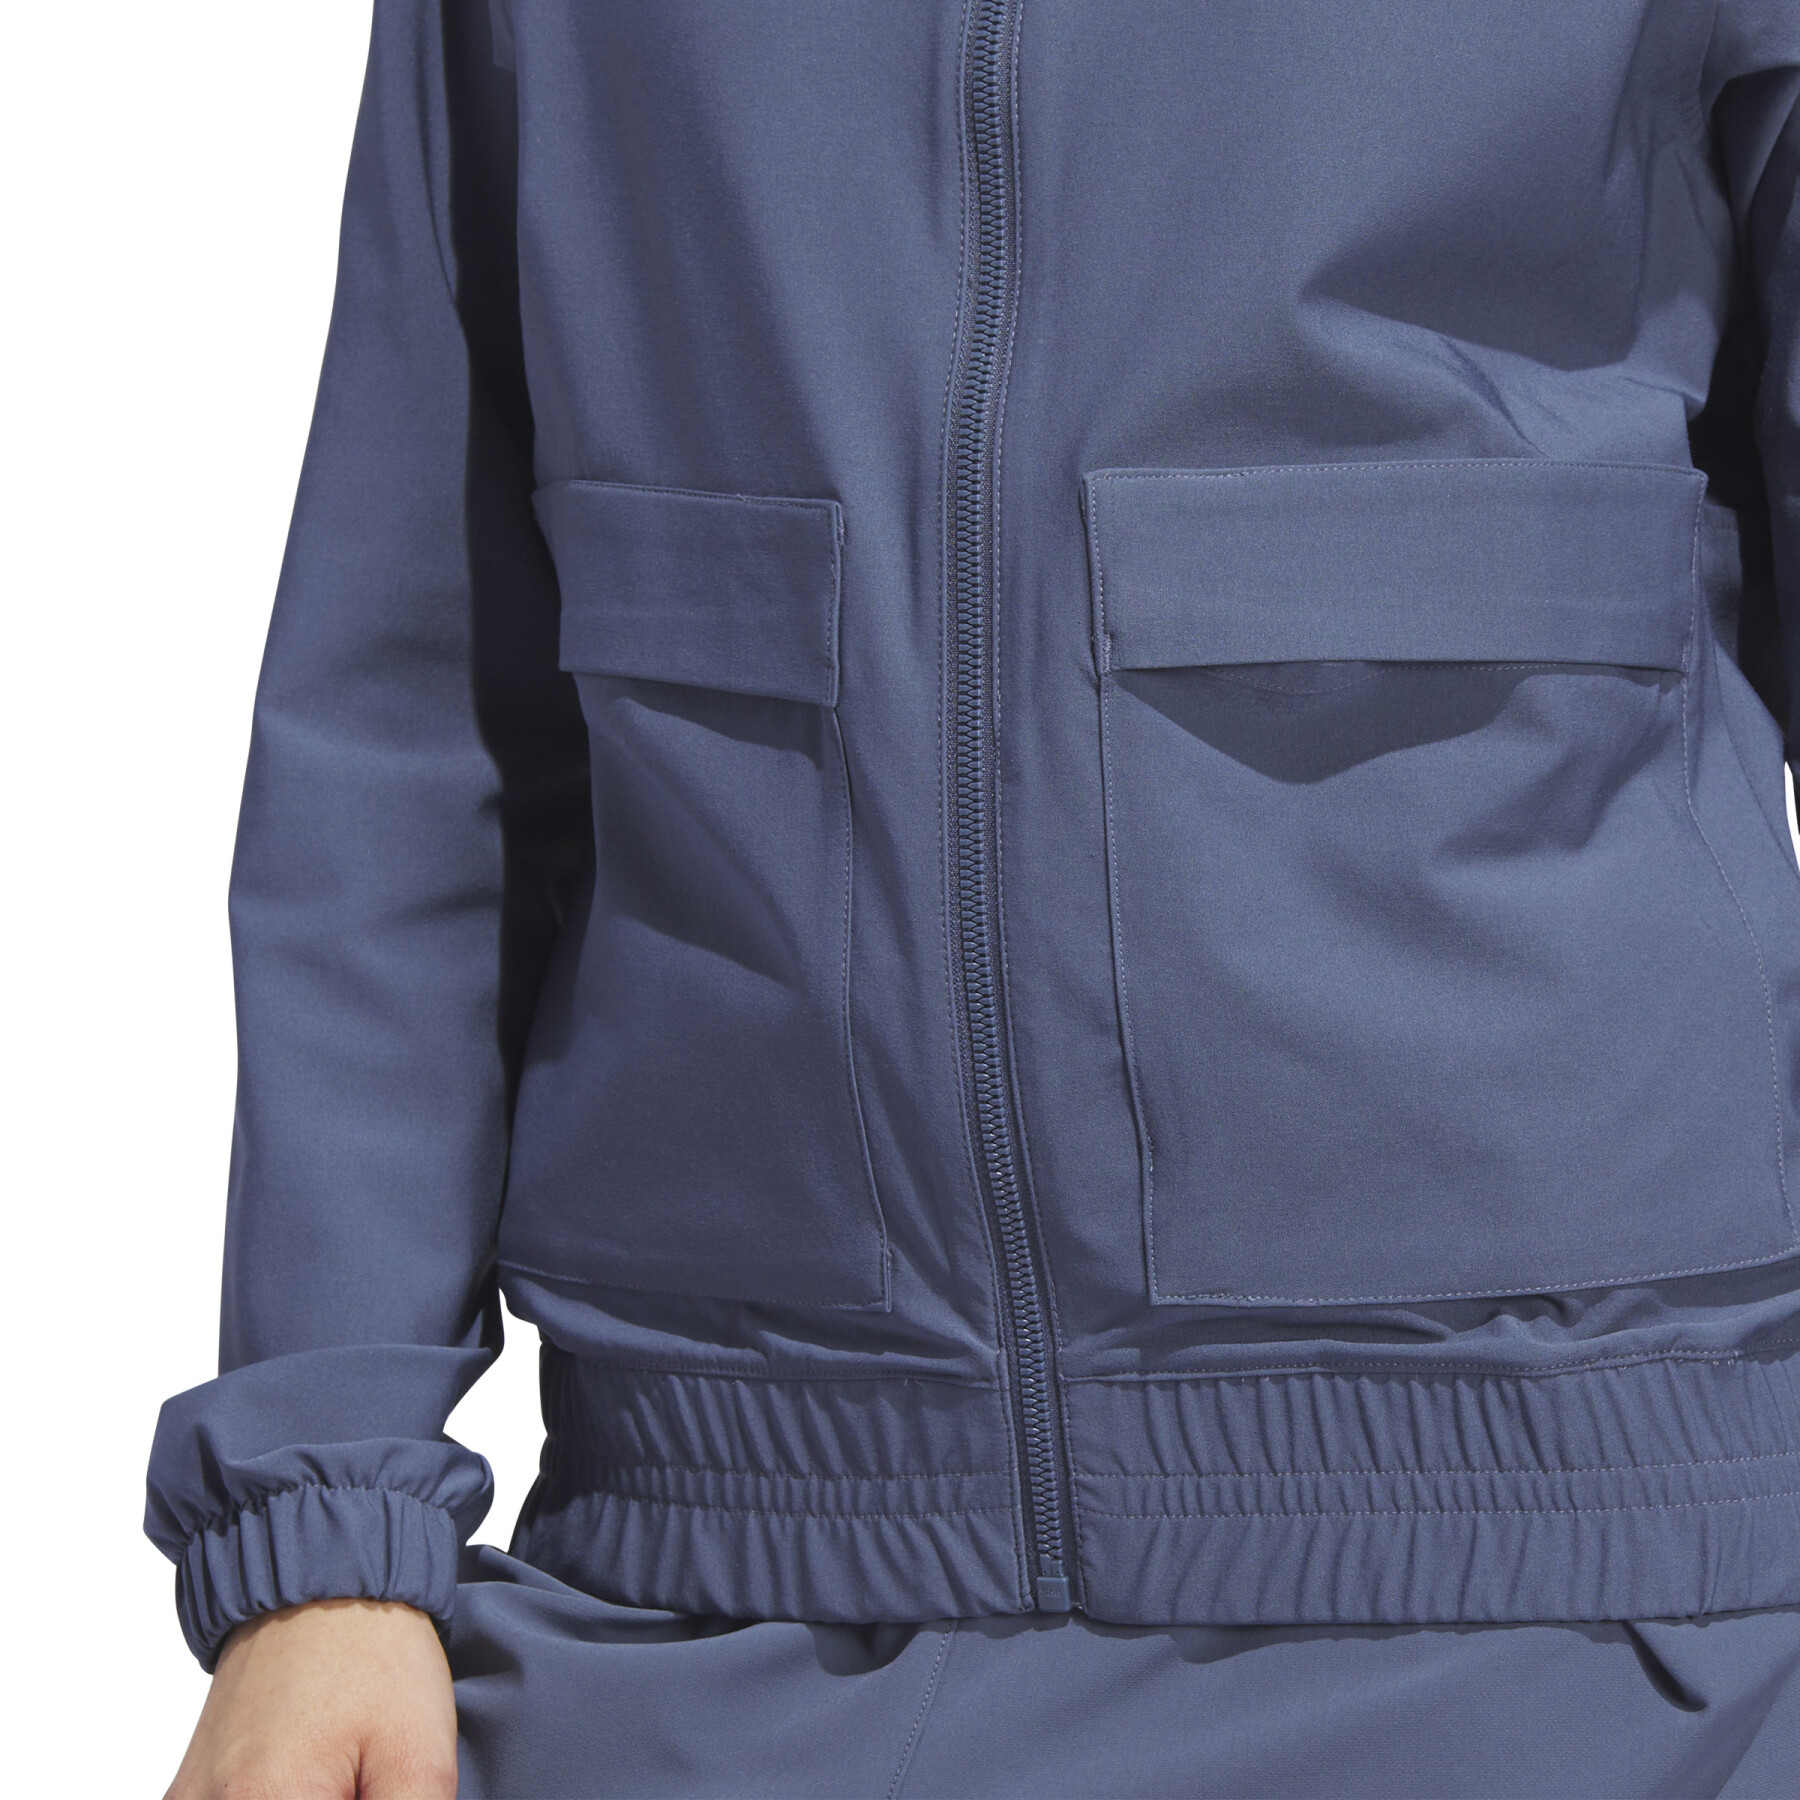 Women's jacket adidas Ultimate365